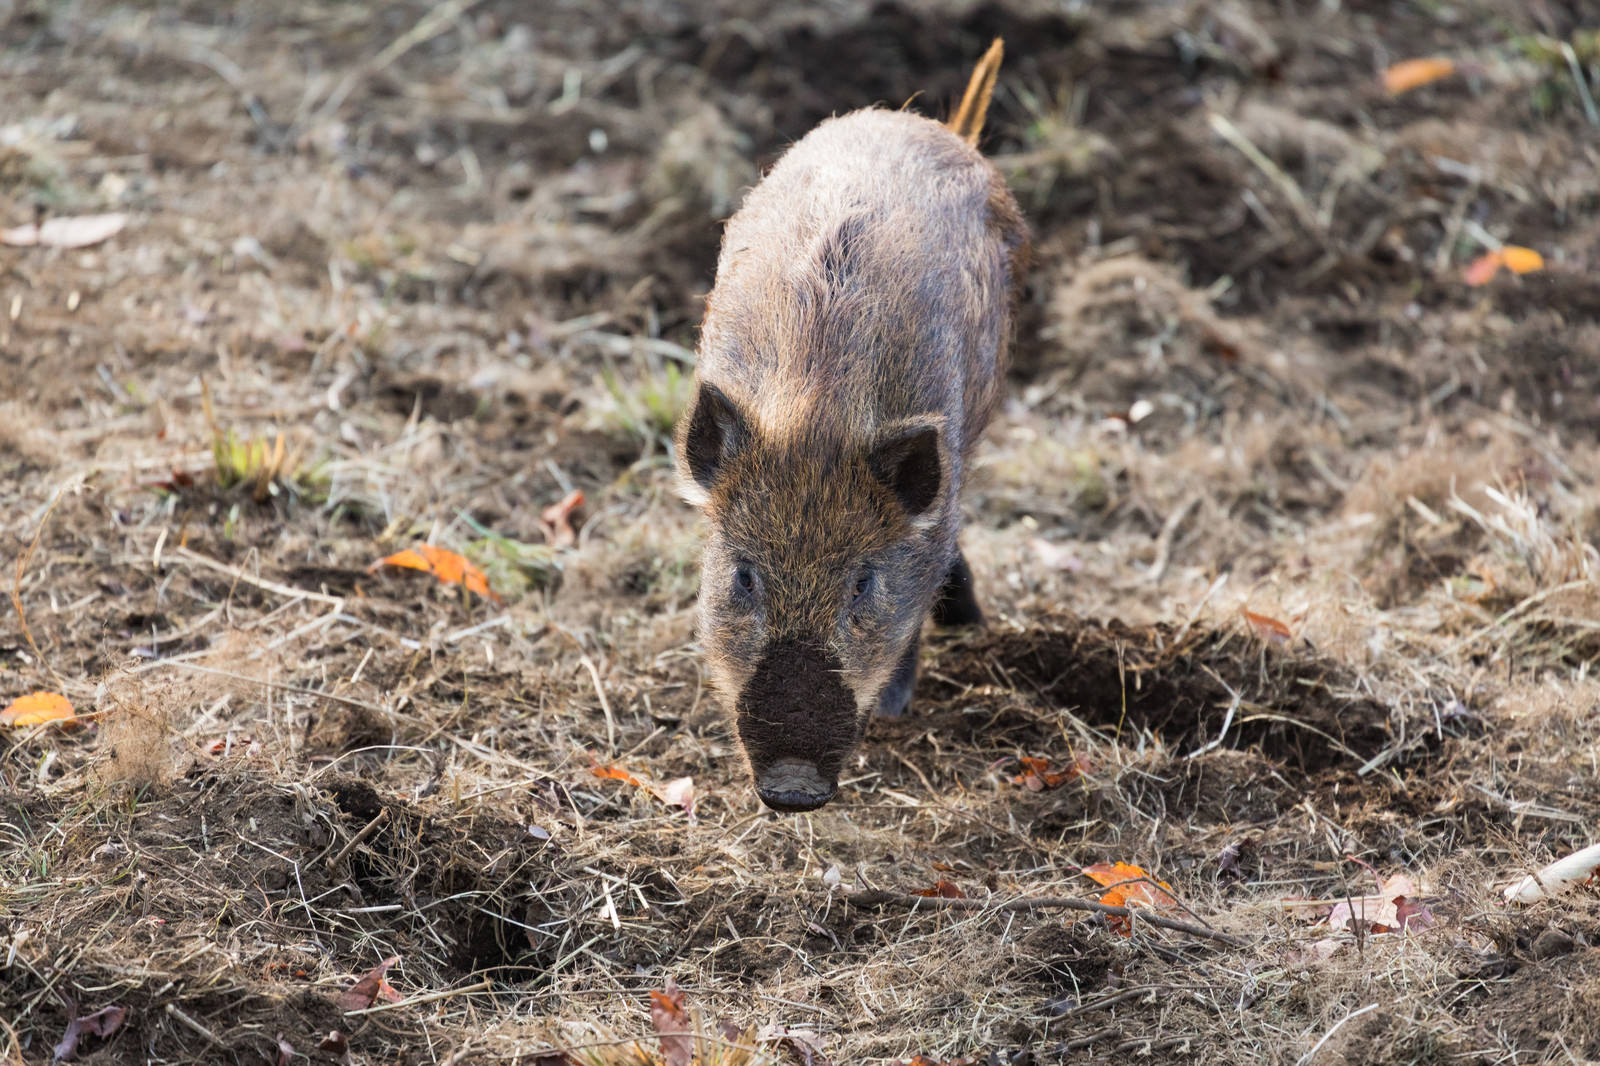 「土を掘り返して鼻に泥がついた猪 | フリー素材のぱくたそ」の写真